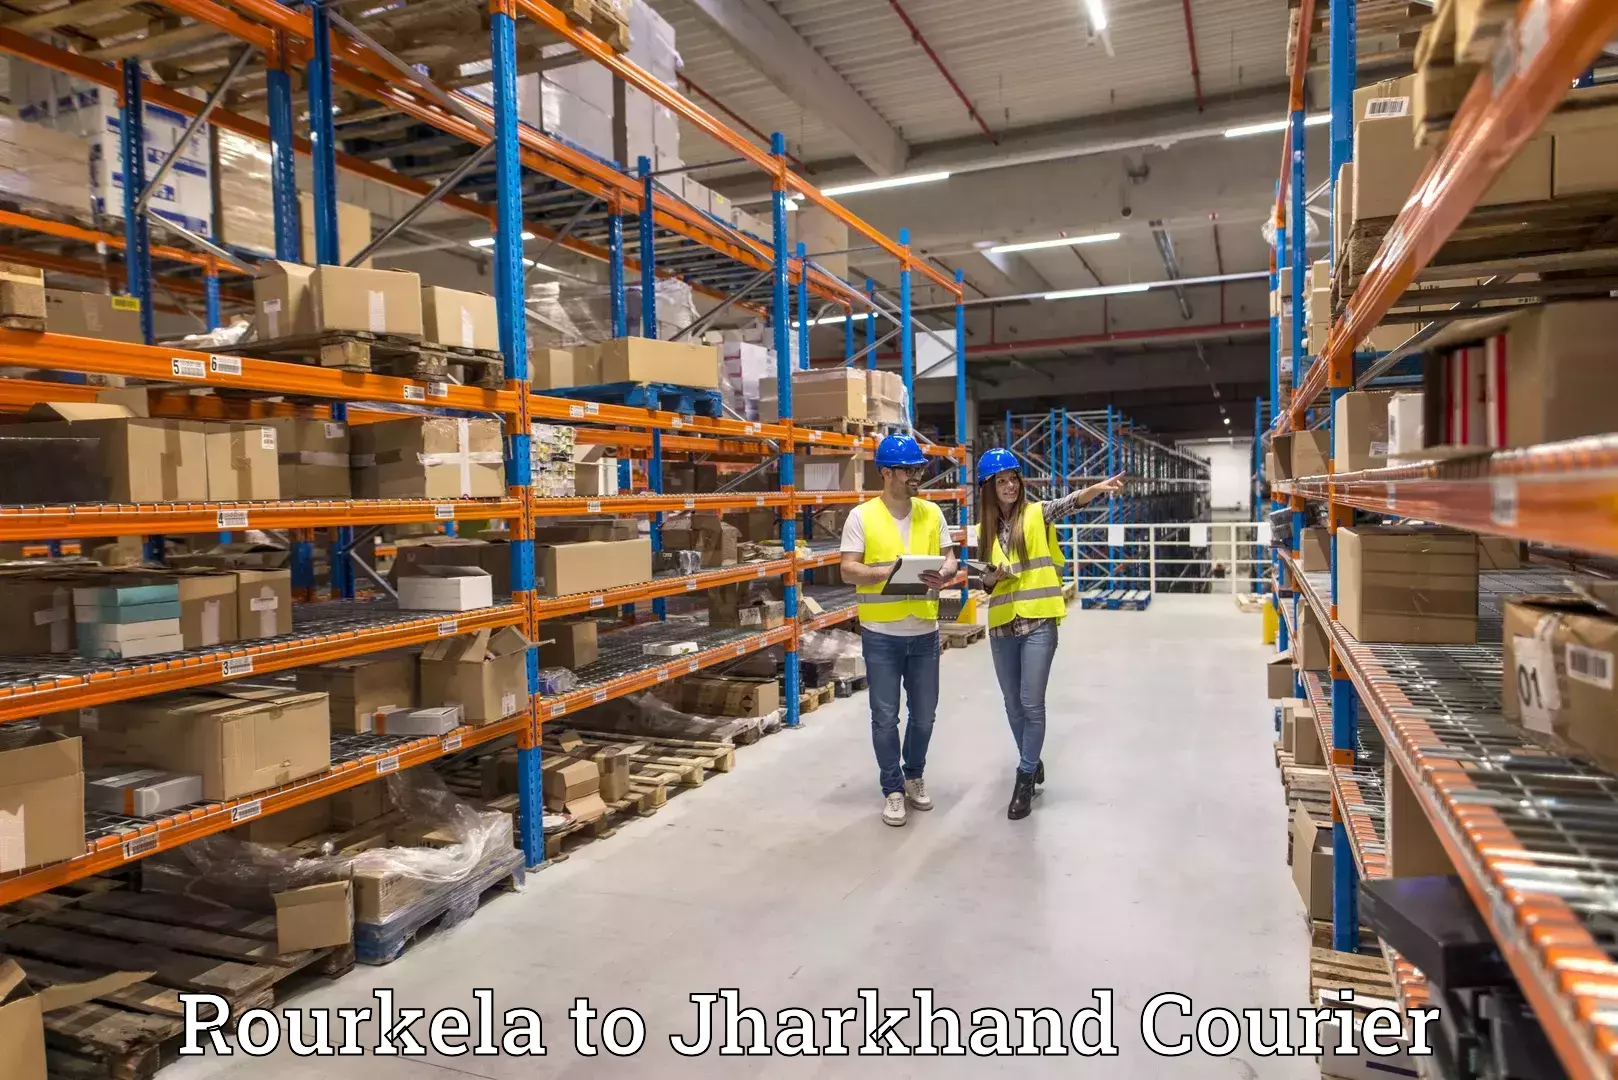 24-hour courier service Rourkela to Jagannathpur